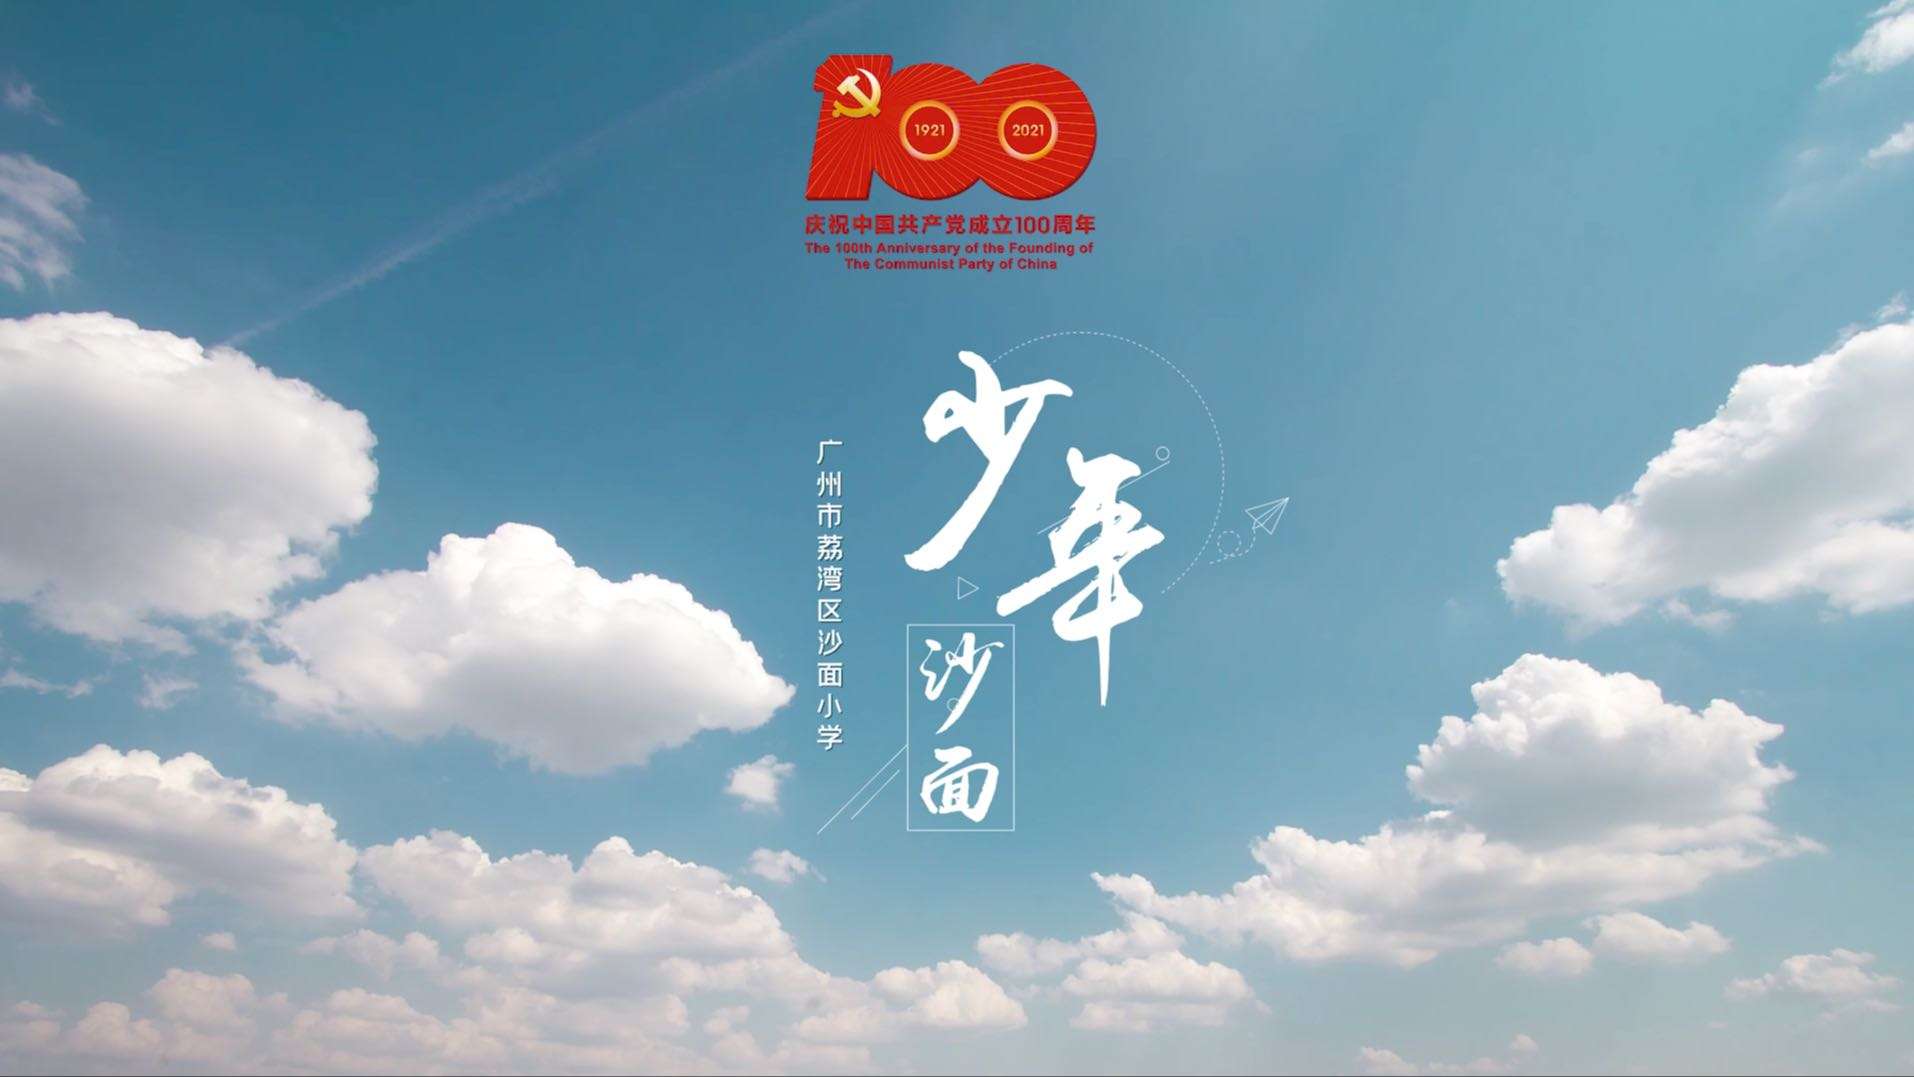 广州沙面小学“少年”祝贺中国共产党100岁生日快乐！